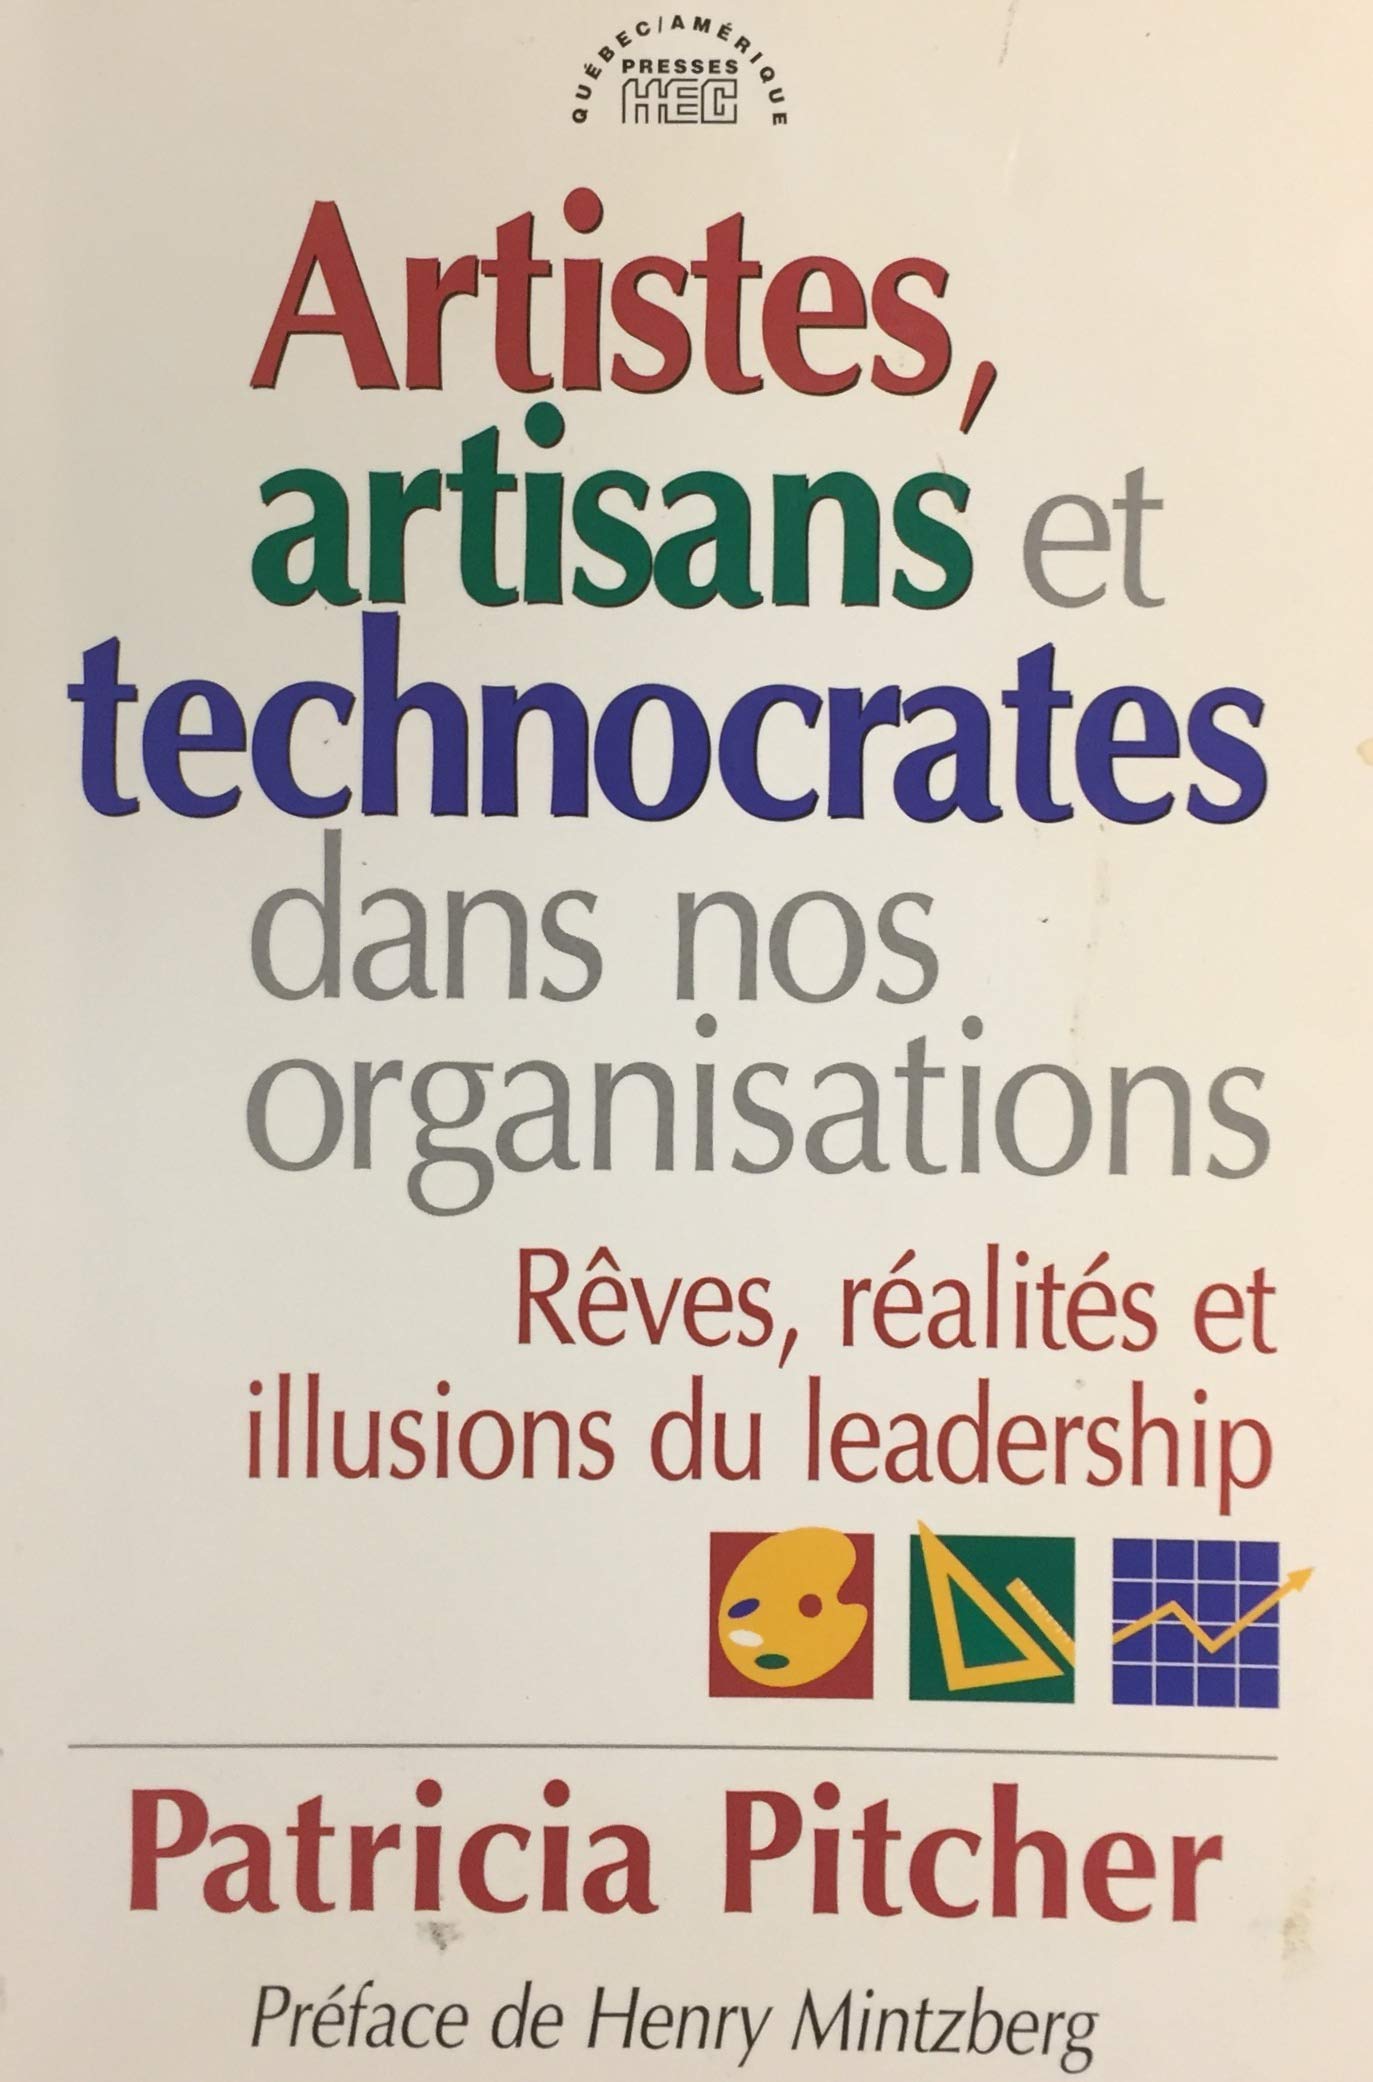 Livre ISBN 2890377652 Artistes, artisans et technocrates dans nos organisations (Patricia Pitcher)